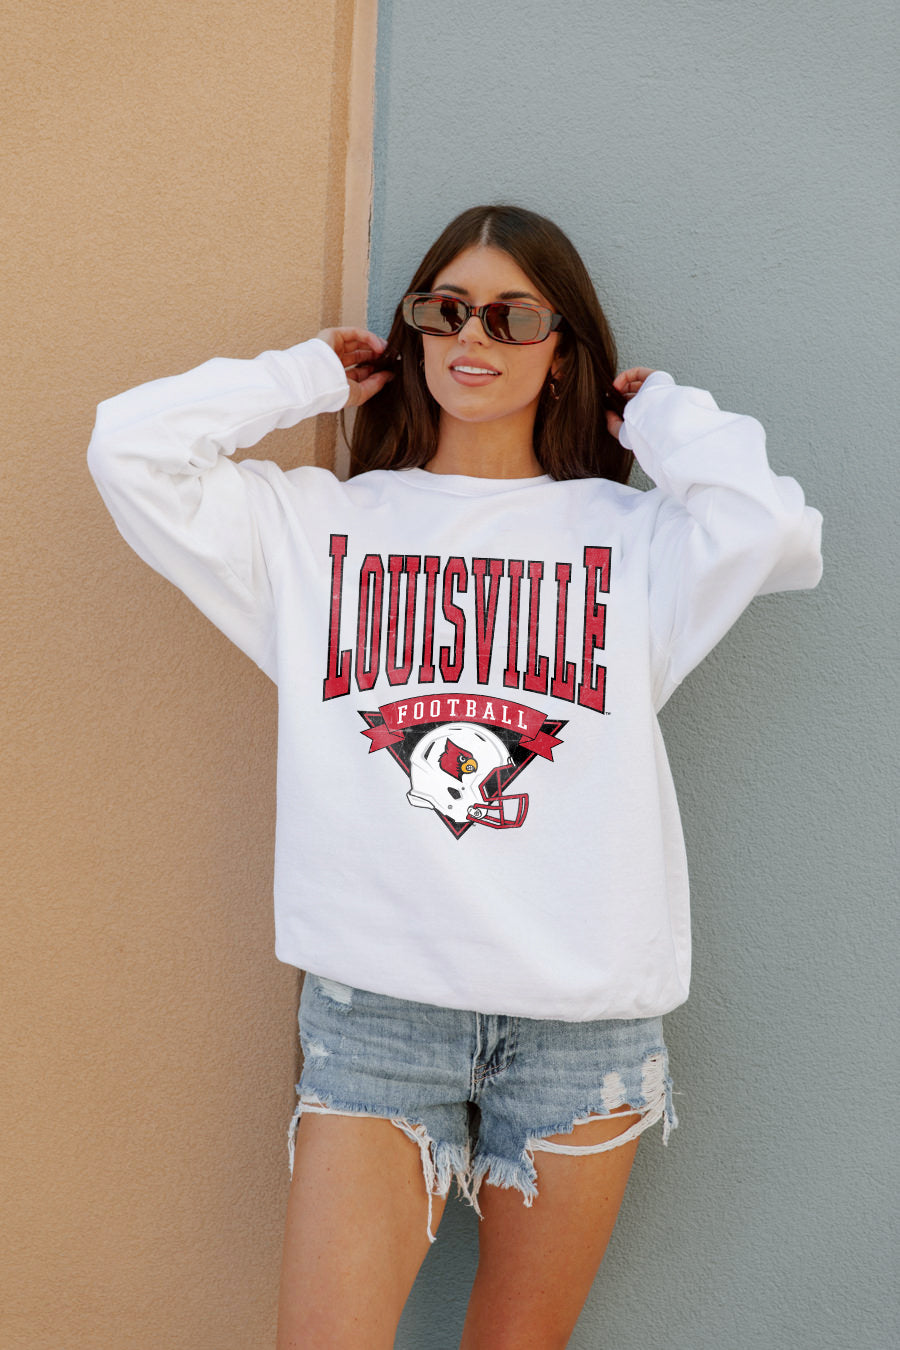 University of Louisville Sweatshirts, Louisville Cardinals Hoodies, Fleece